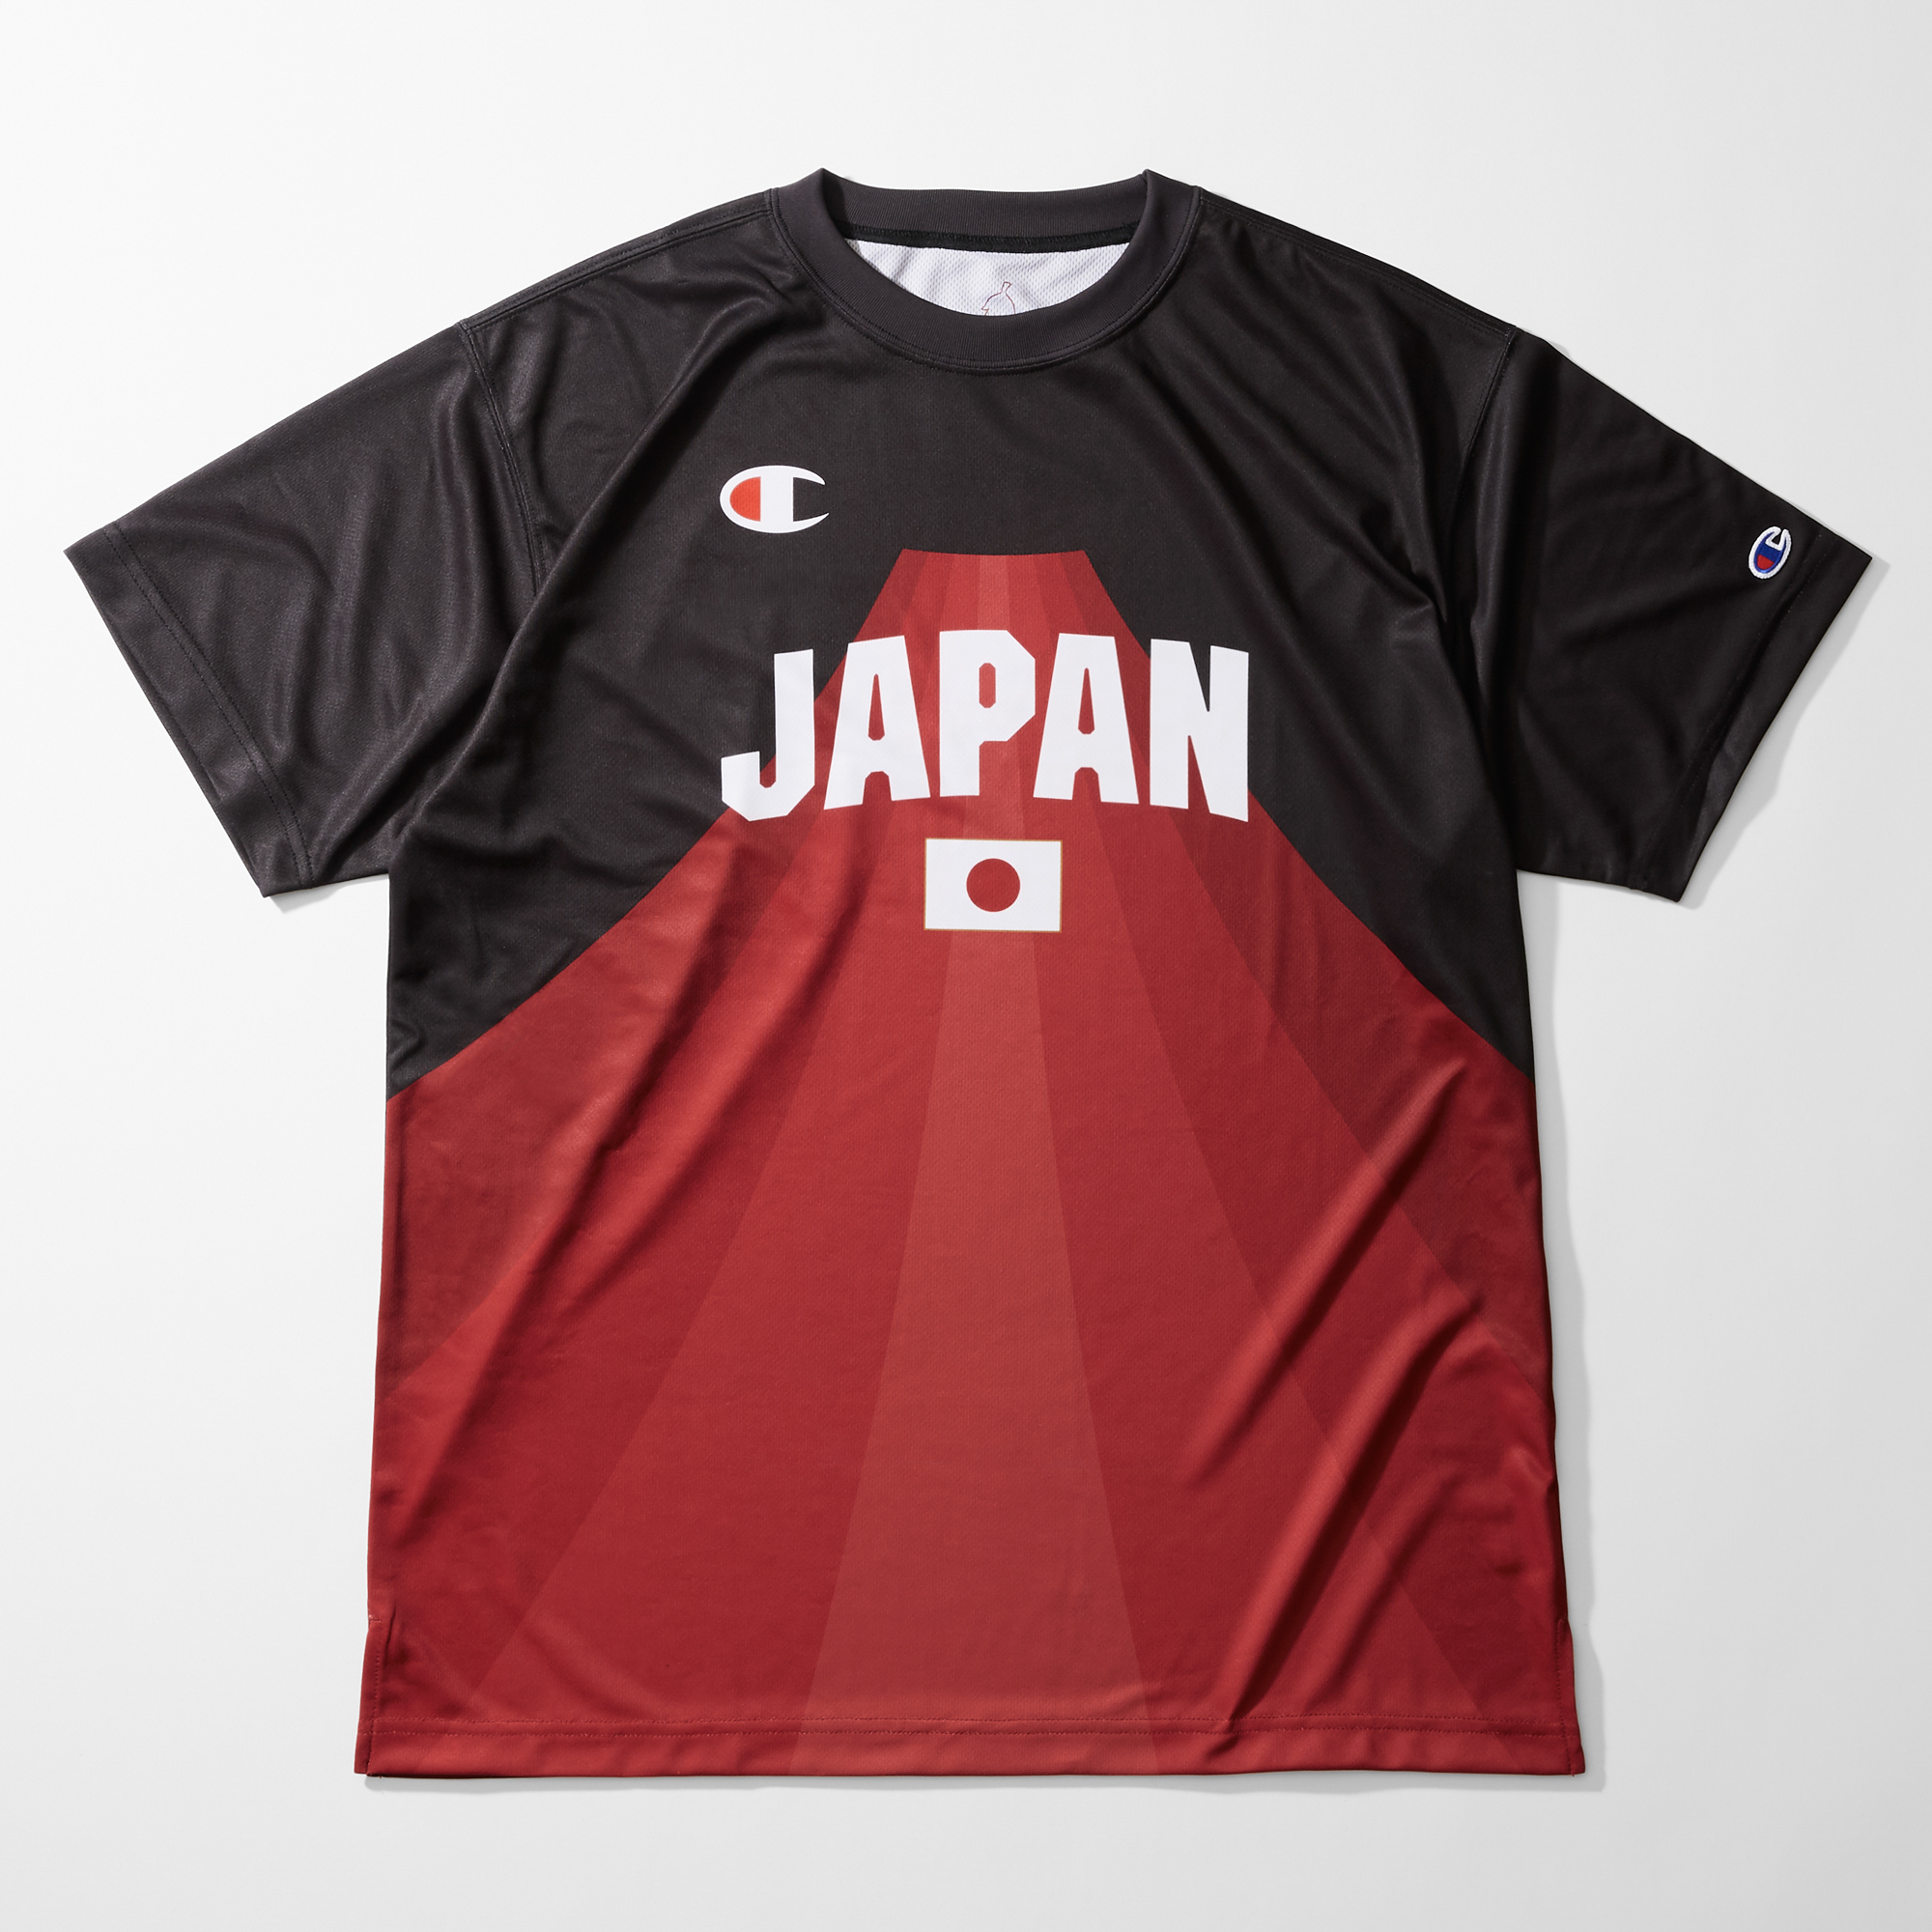 新品未使用 日本代表Tシャツ ナイキ NIKE アカツキジャパン Tシャツ